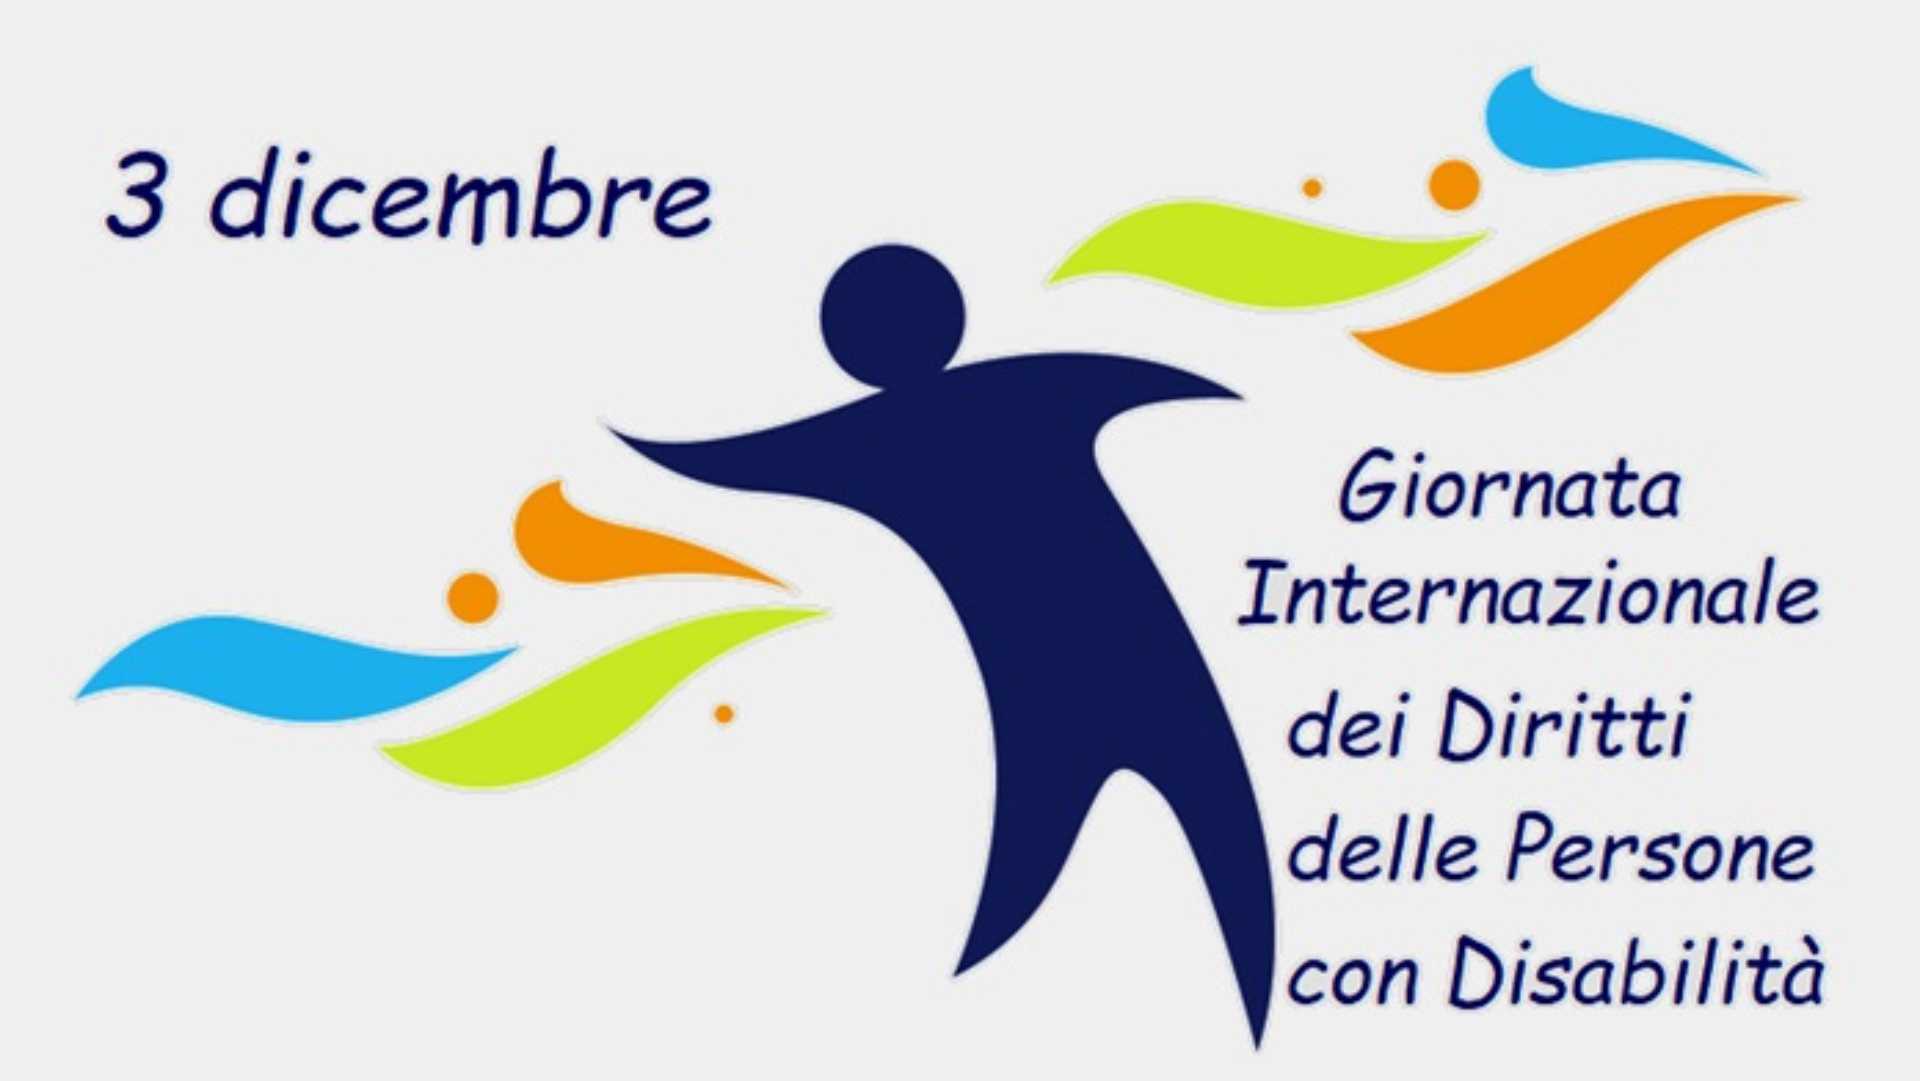 CICCIANO. Giornata Internazionale dei diritti delle persone con disabilità,  il 3 dicembre appuntamento speciale con Francesca & Cinzia -